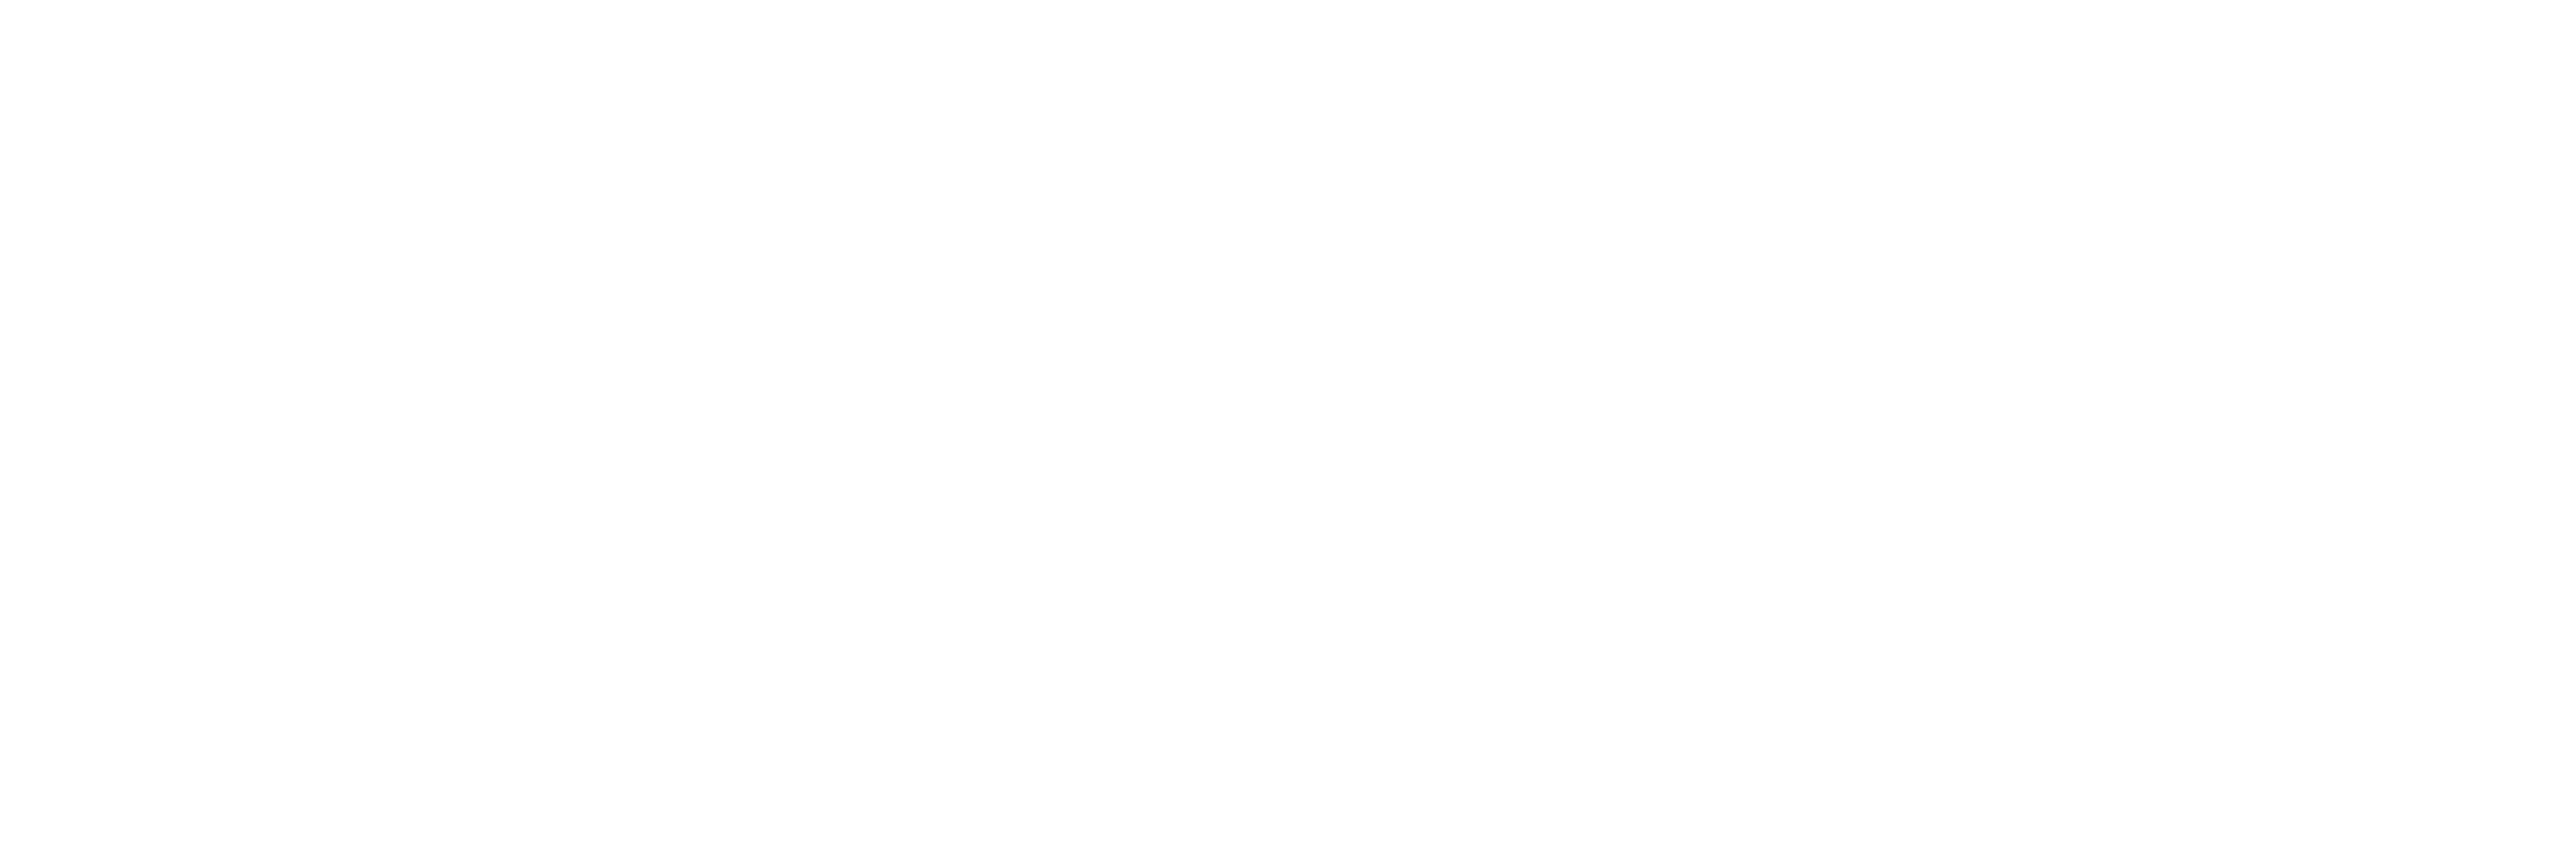 Bodega Casalobos - Montes de Toledo